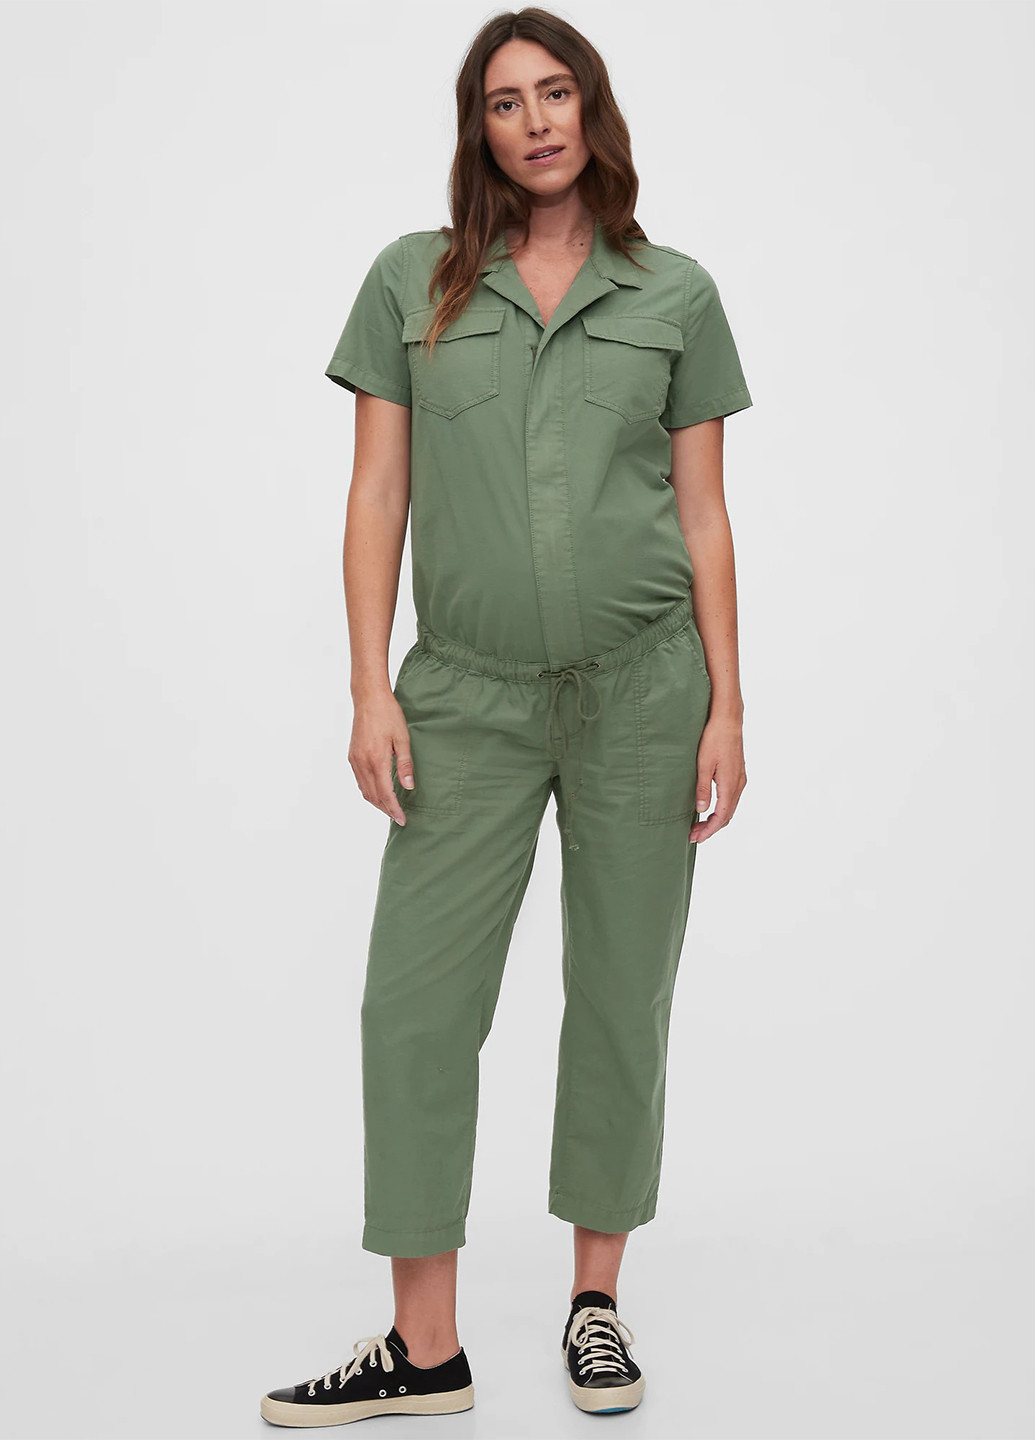 Комбинезон для беременных Gap комбинезон-брюки однотонный зелёный кэжуал хлопок